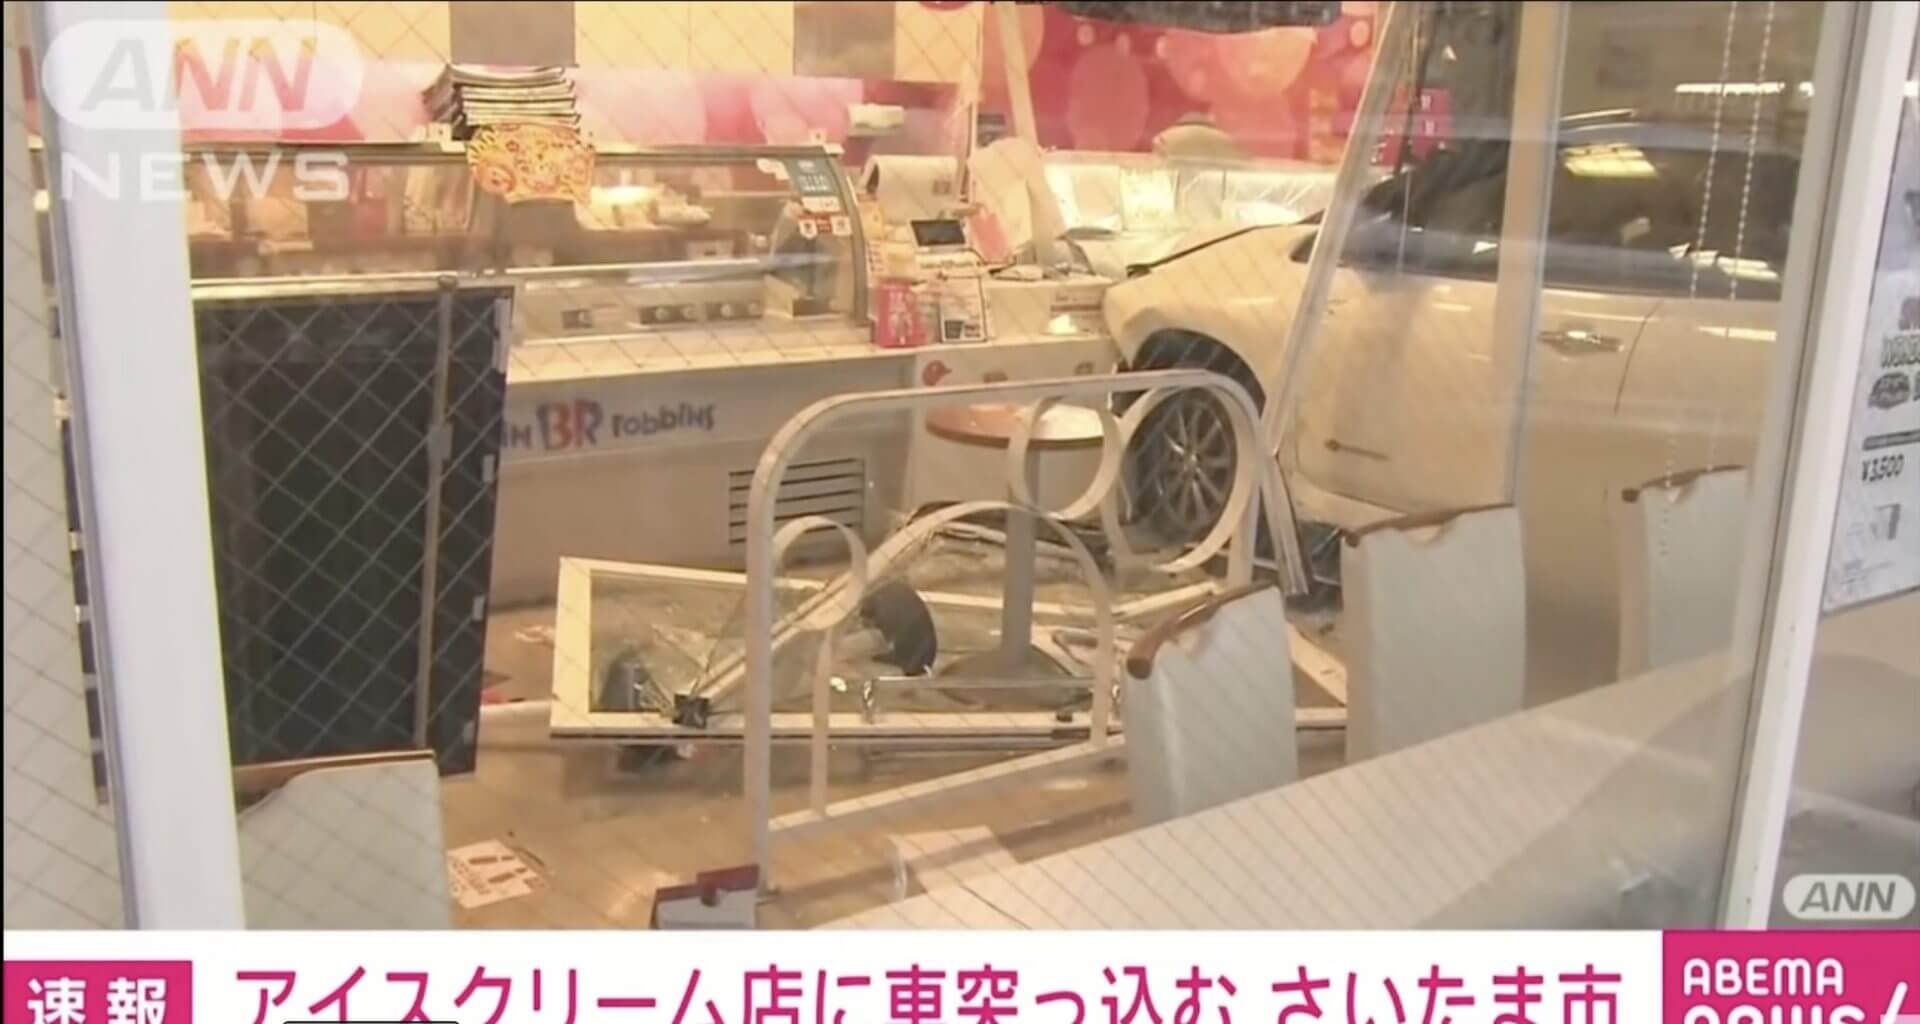 Carro destrói fachada de sorveteria no Japão